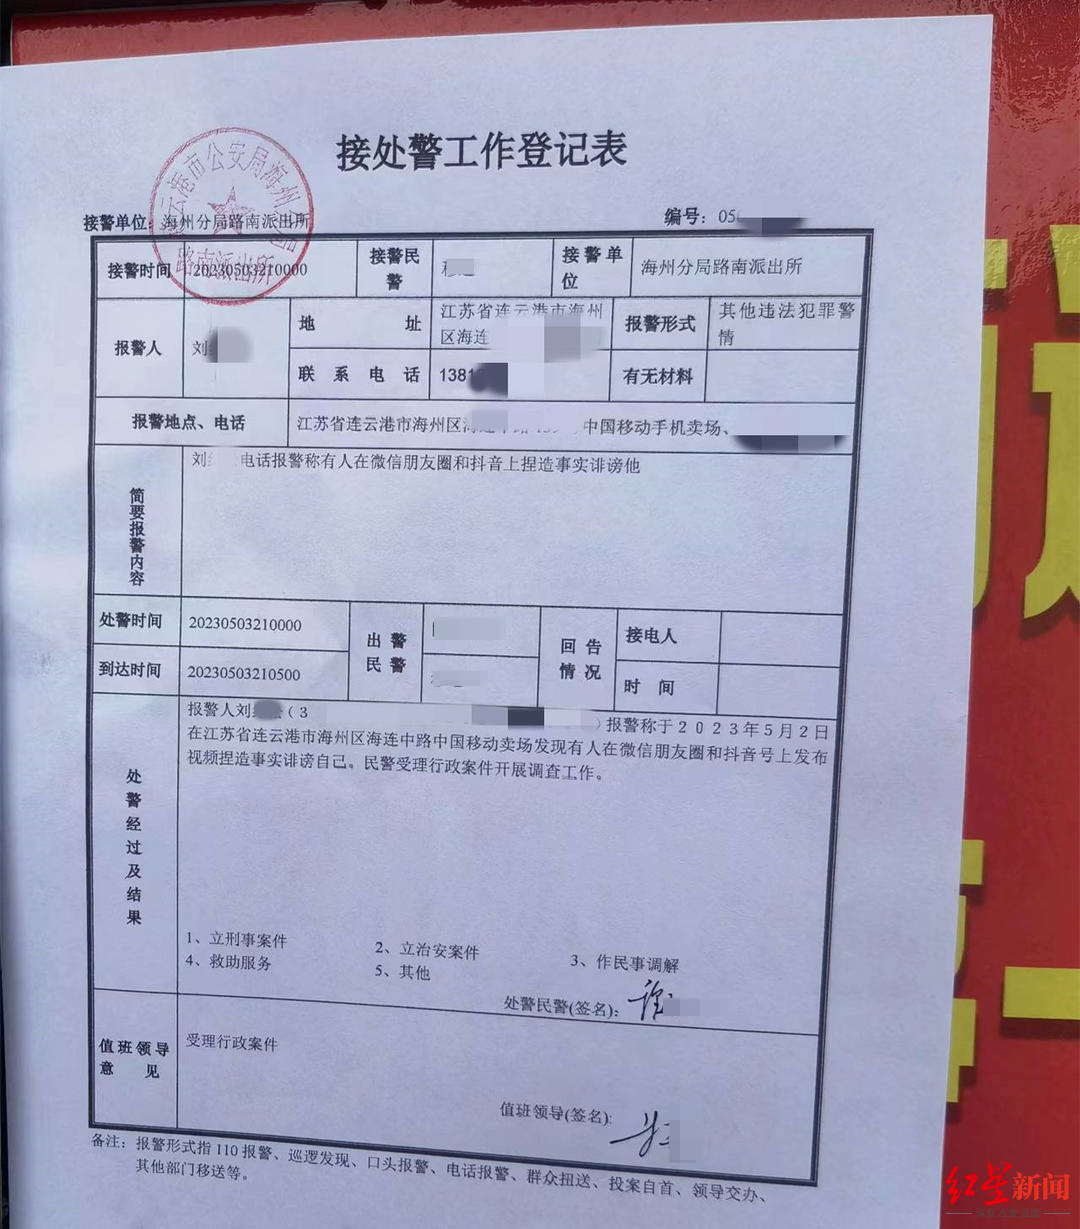 ↑刘某某提供的“接处警工作登记表”